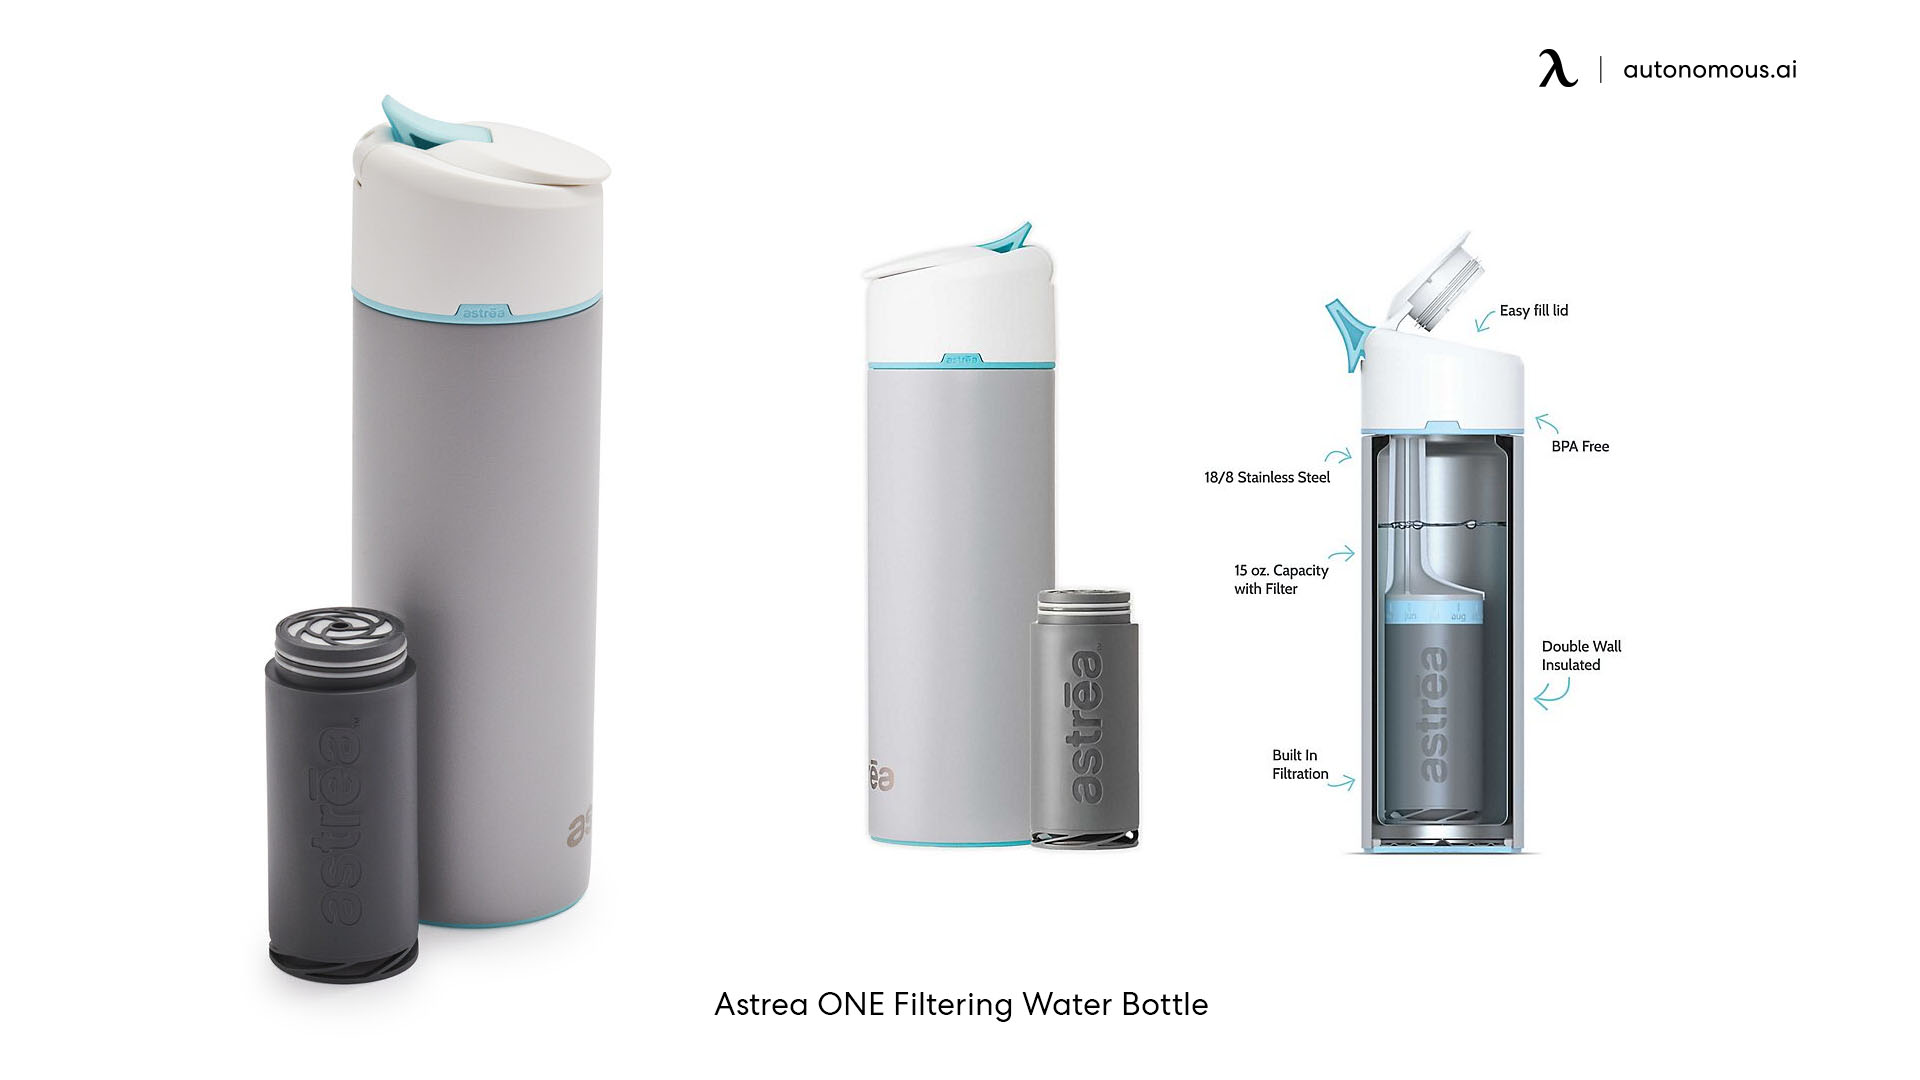 Astrea ONE Filtering Water Bottle